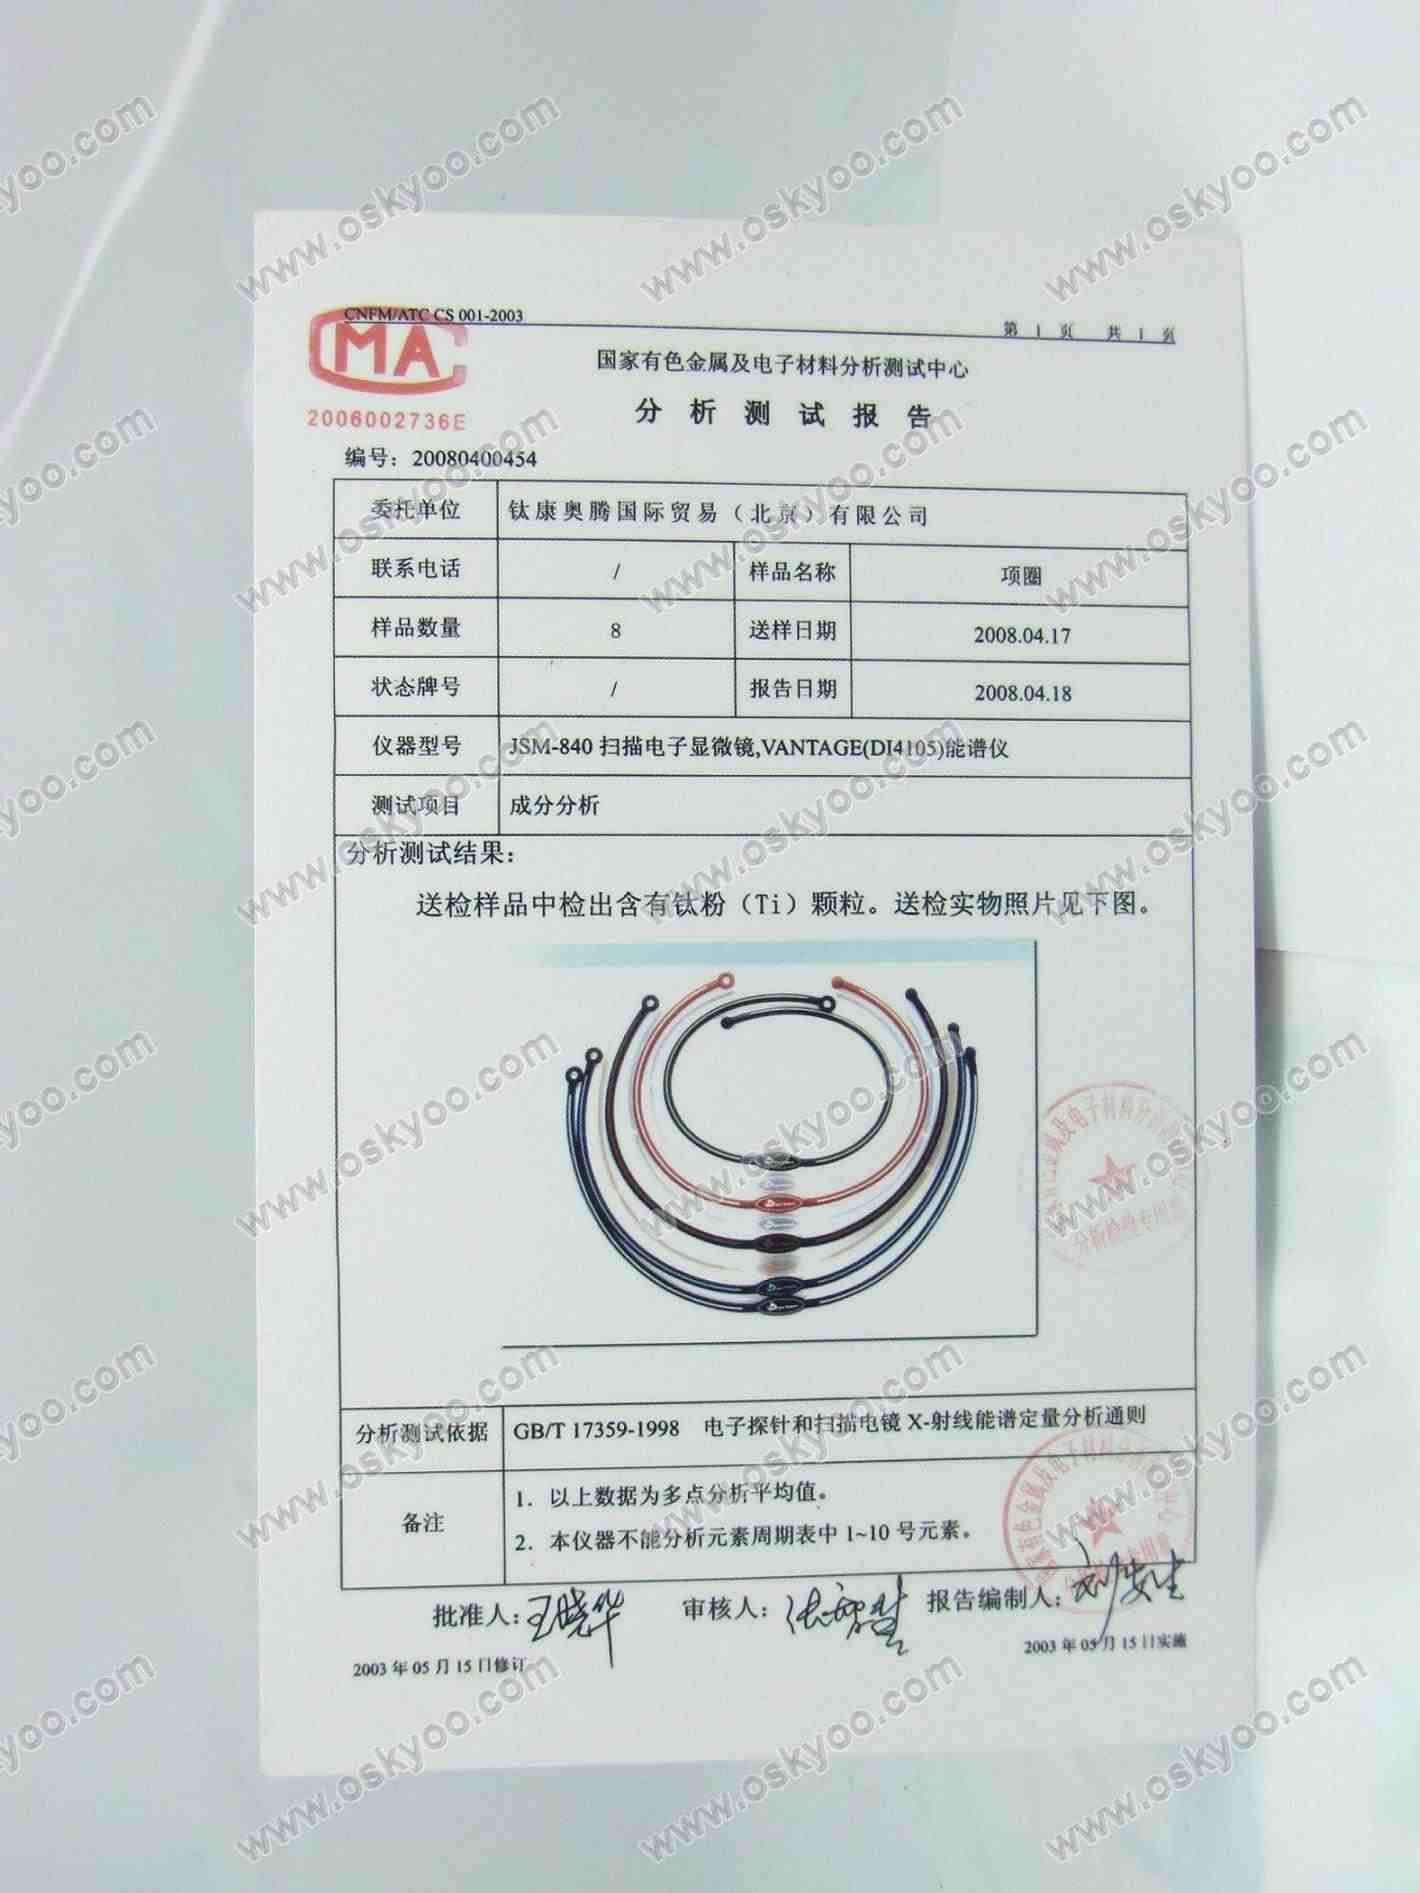 Titanium Necklaces Certificates